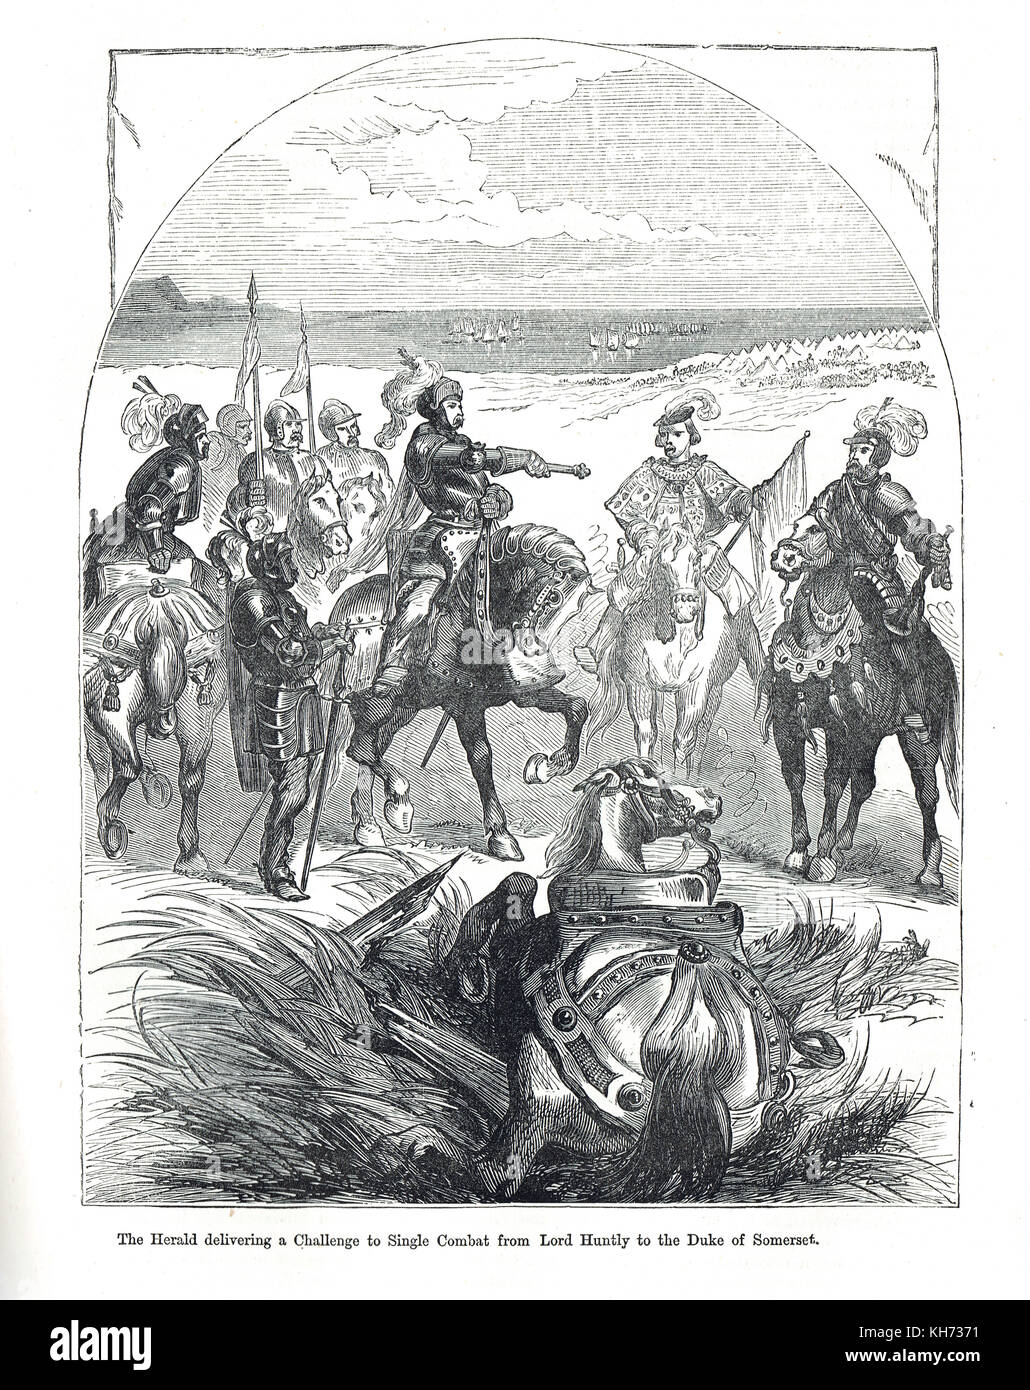 Batalla de pinkie cleugh, 10 de septiembre de 1547. el Herald ofrece un desafío a combate singular de lord huntly al duque de Somerset Foto de stock